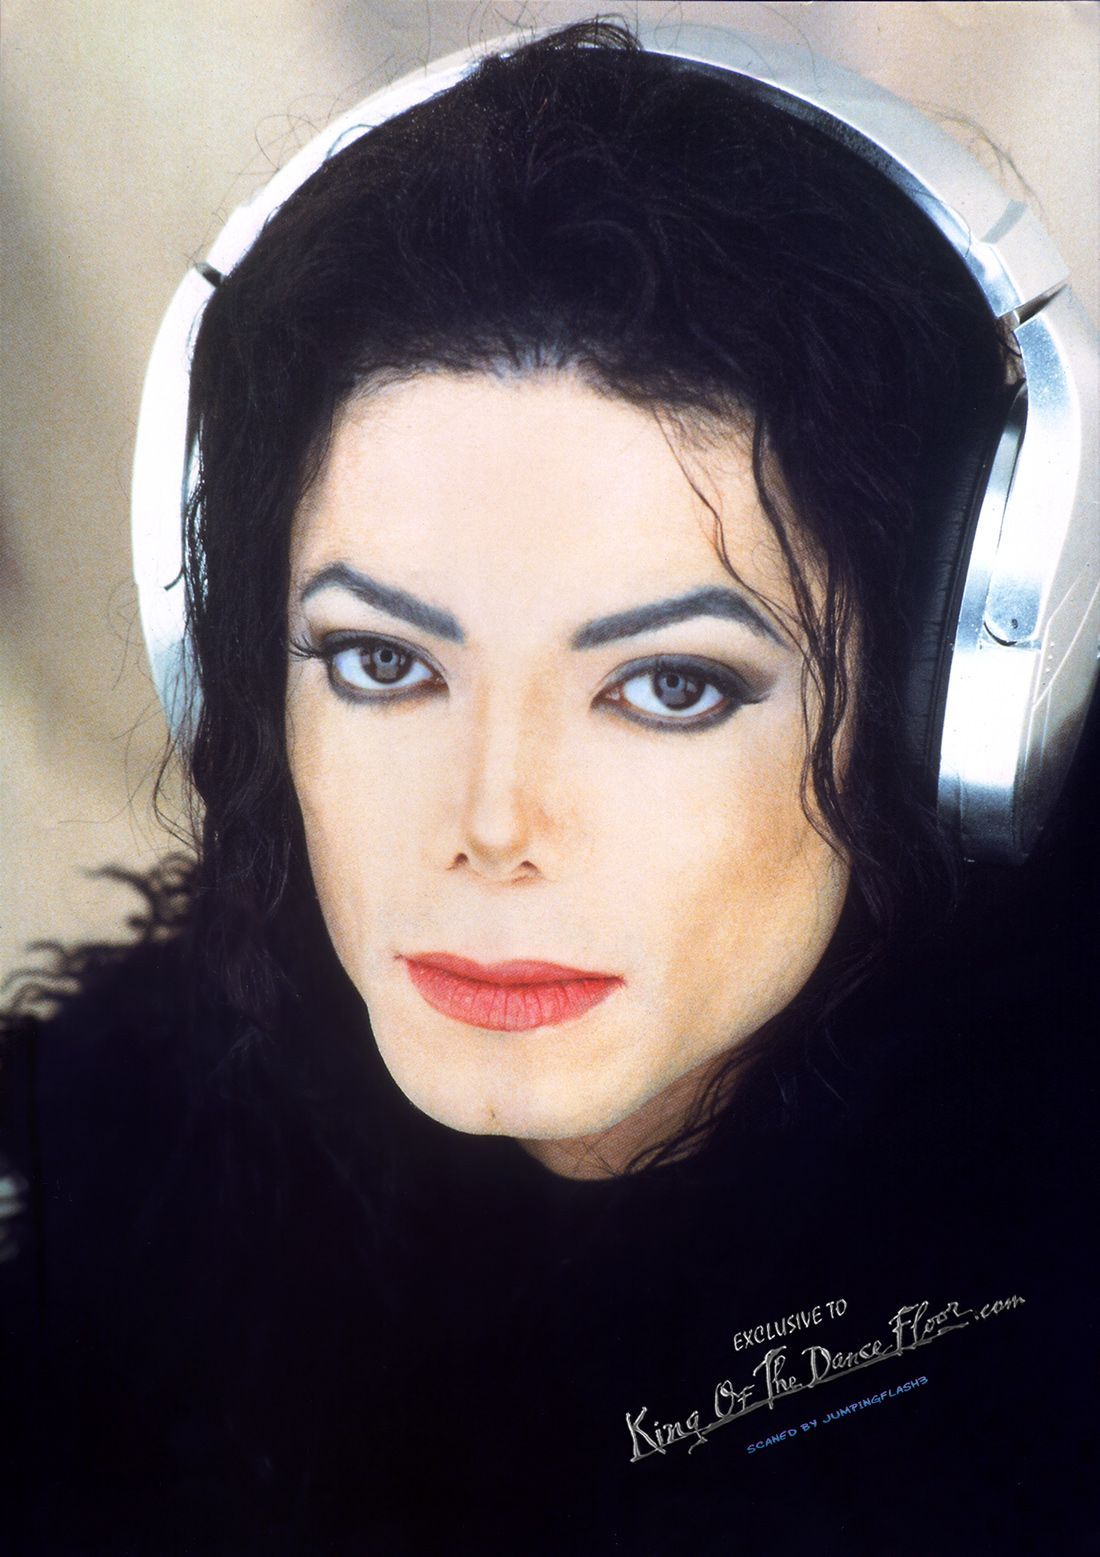 image of micheal jackson. Michael Jackson Scream. Michael jackson scream, Michael jackson image, Michael jackson